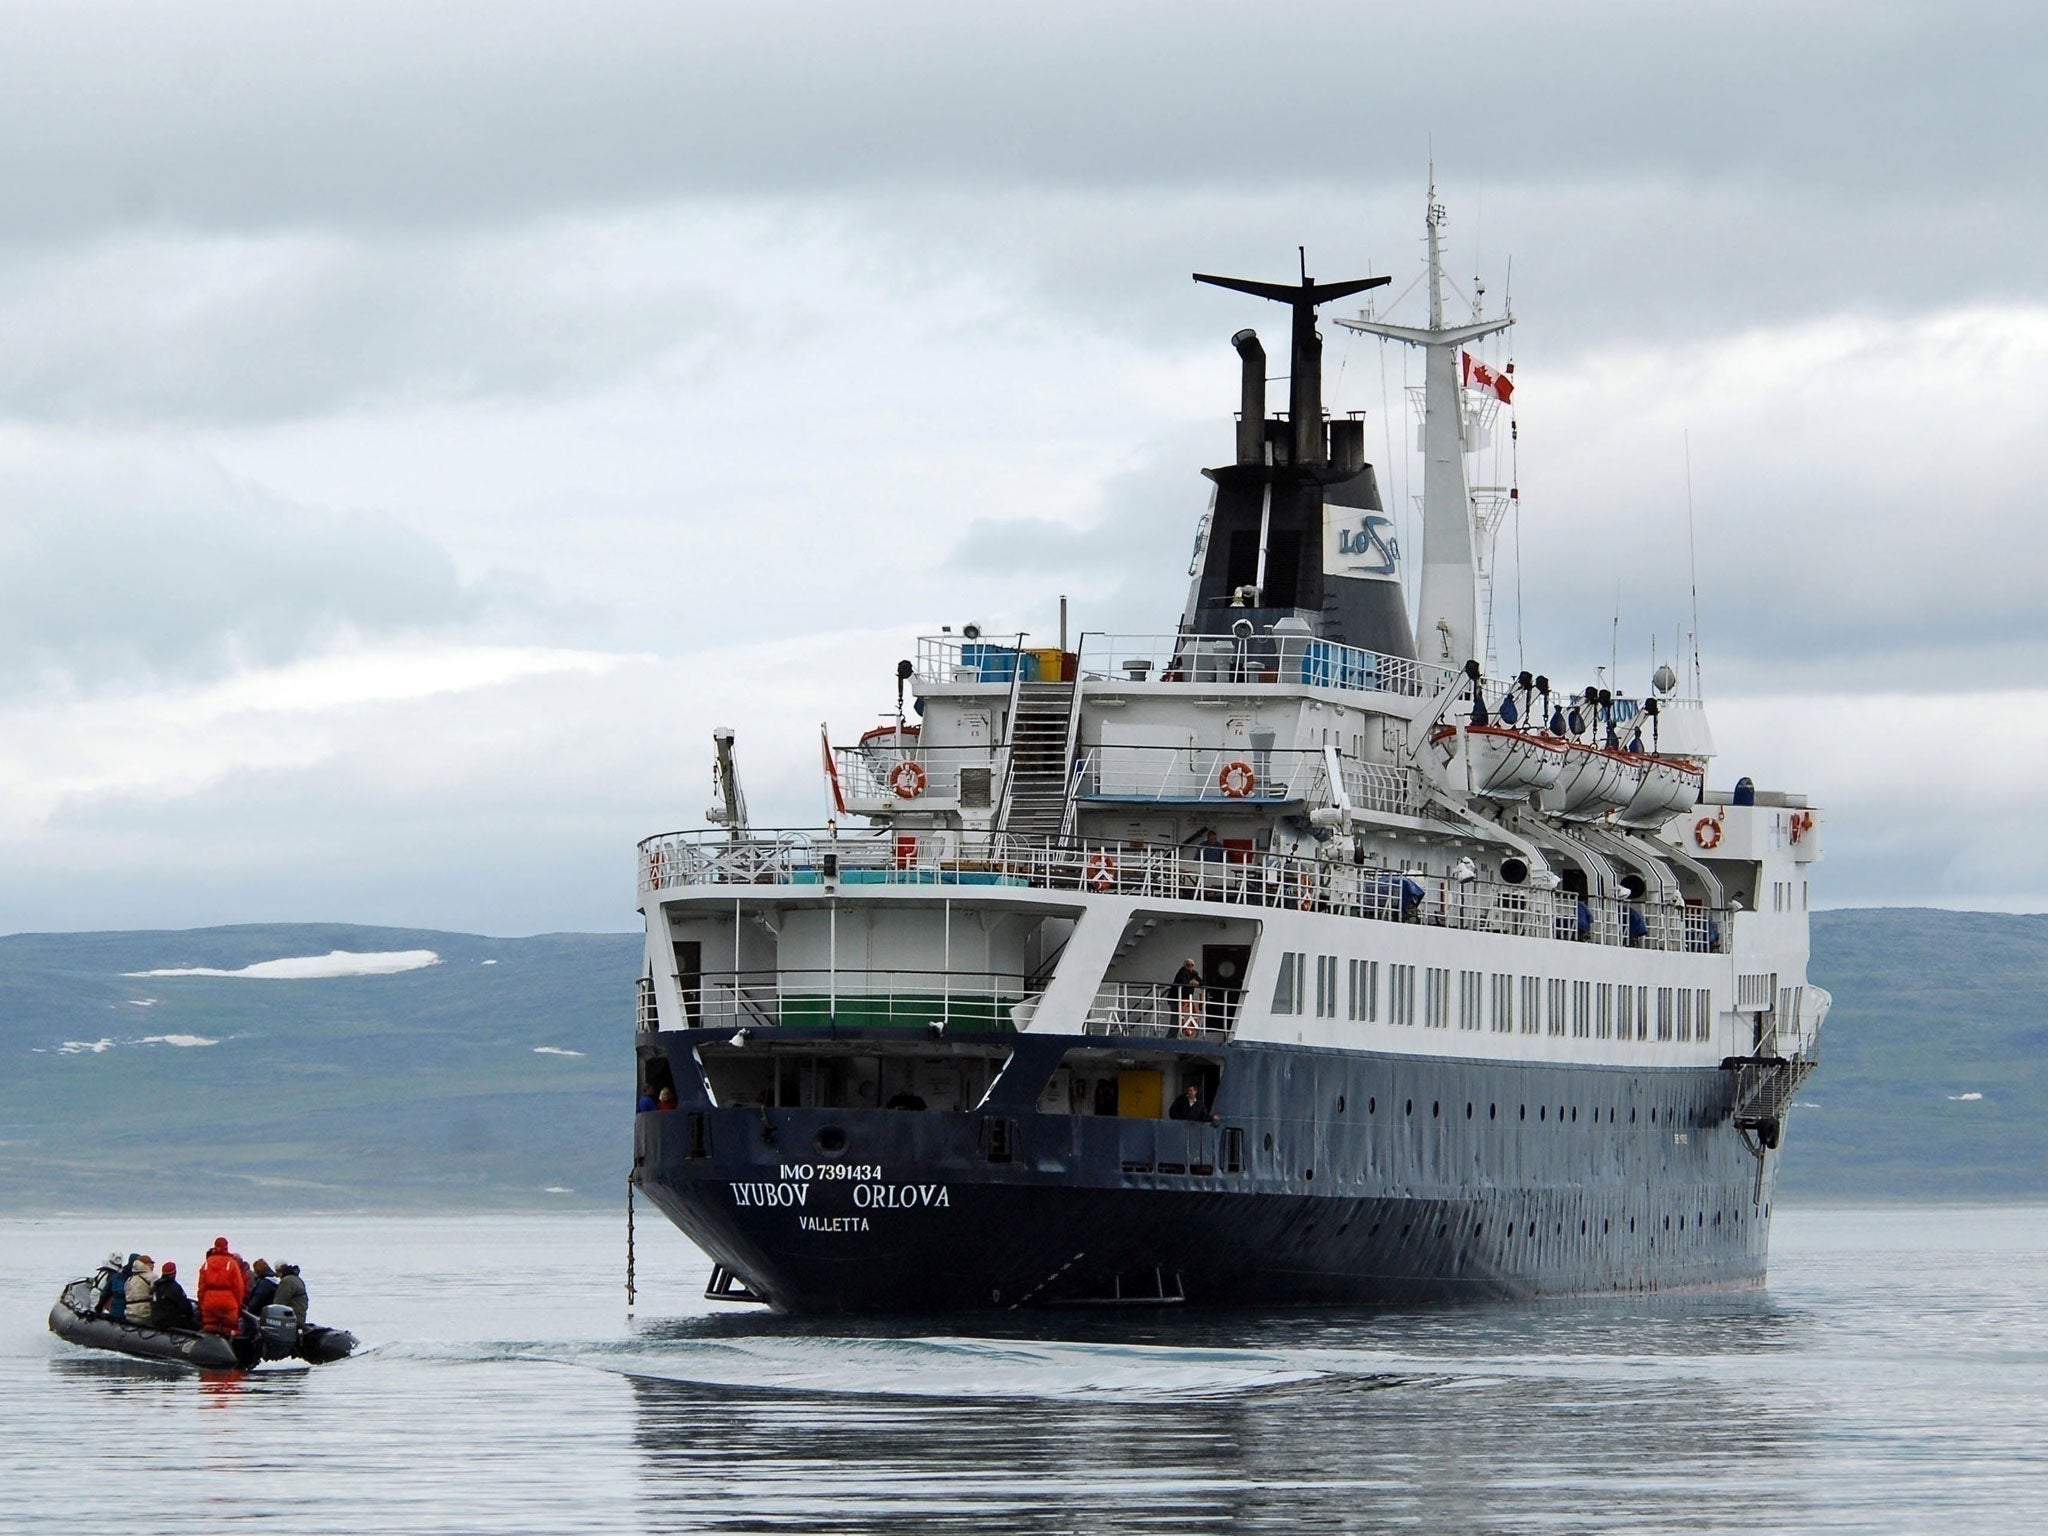 Phantom cruise: The MV 'Lyubov Orlova' was cut adrift in Canada last February